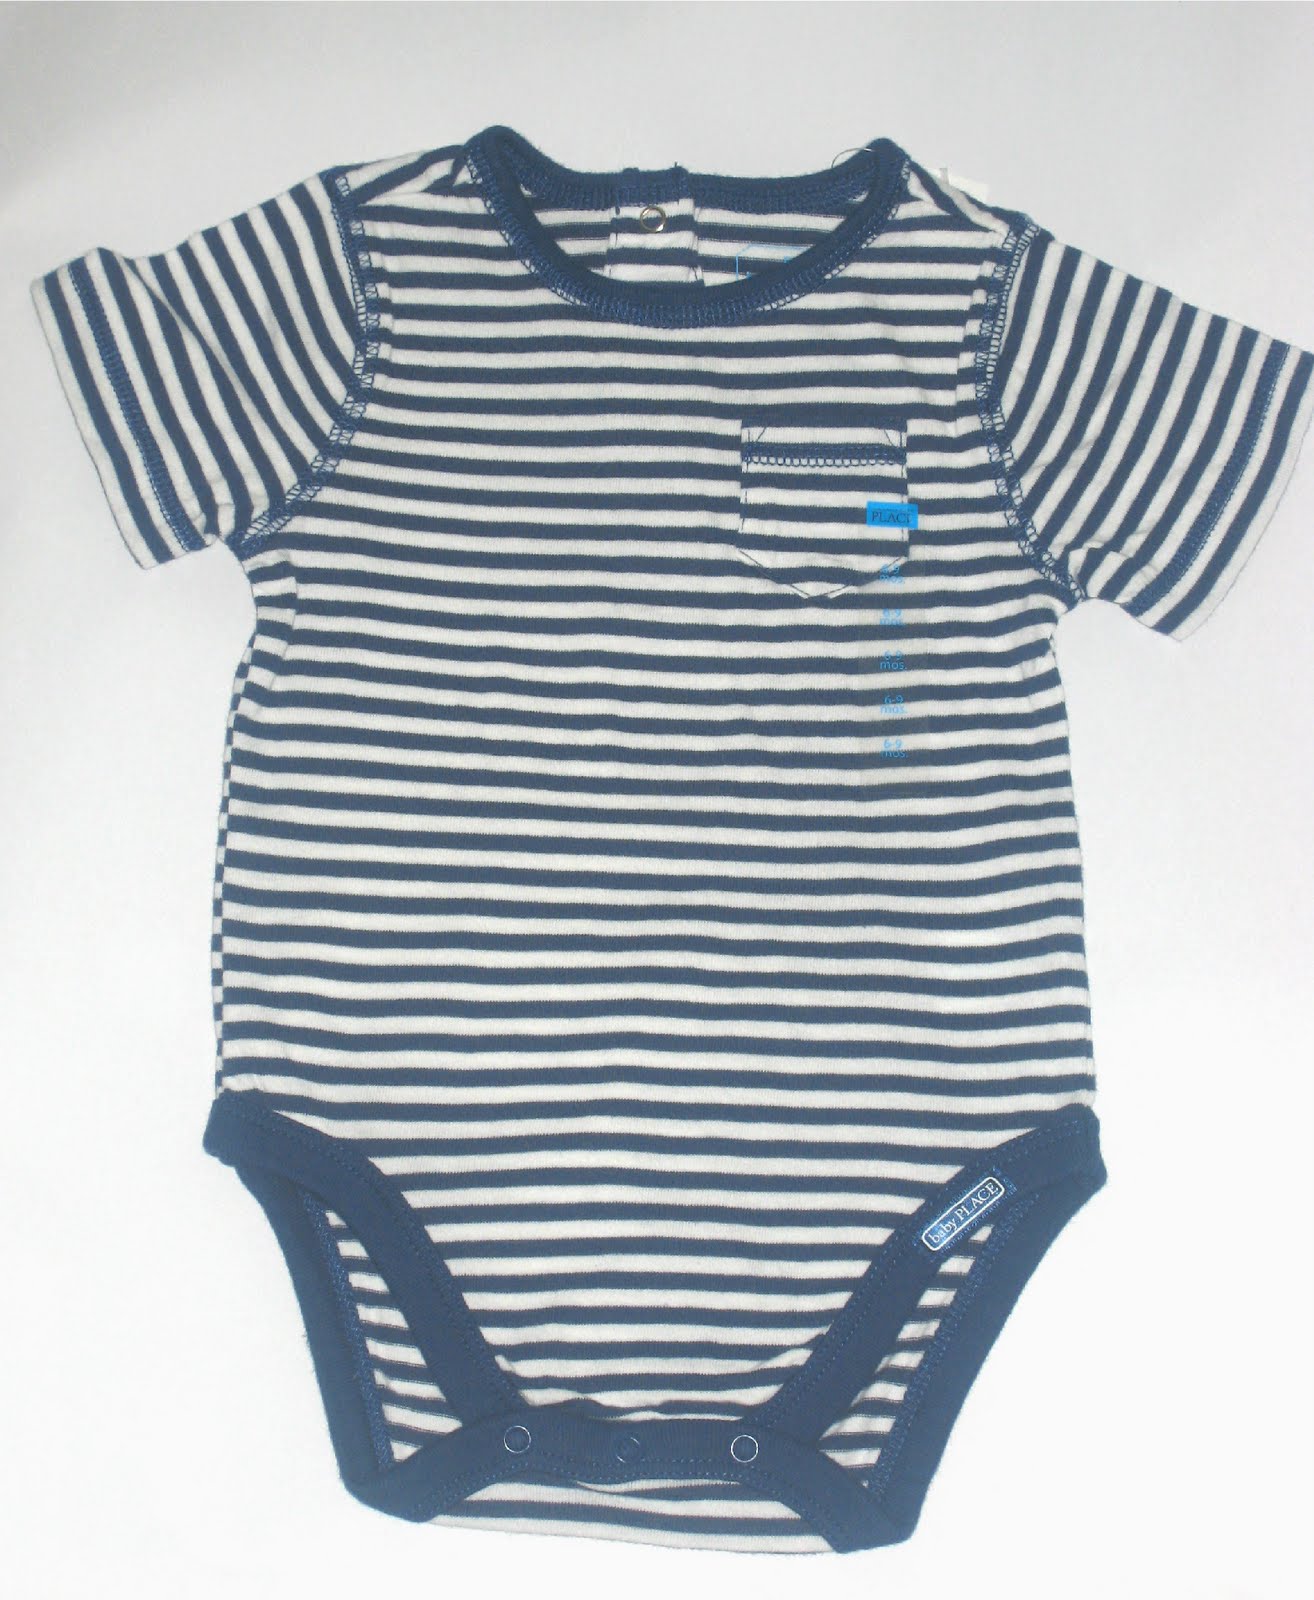 NOTTY BABY: Baby Newborn Bodysuits ( Age 0 - 12 Mths)